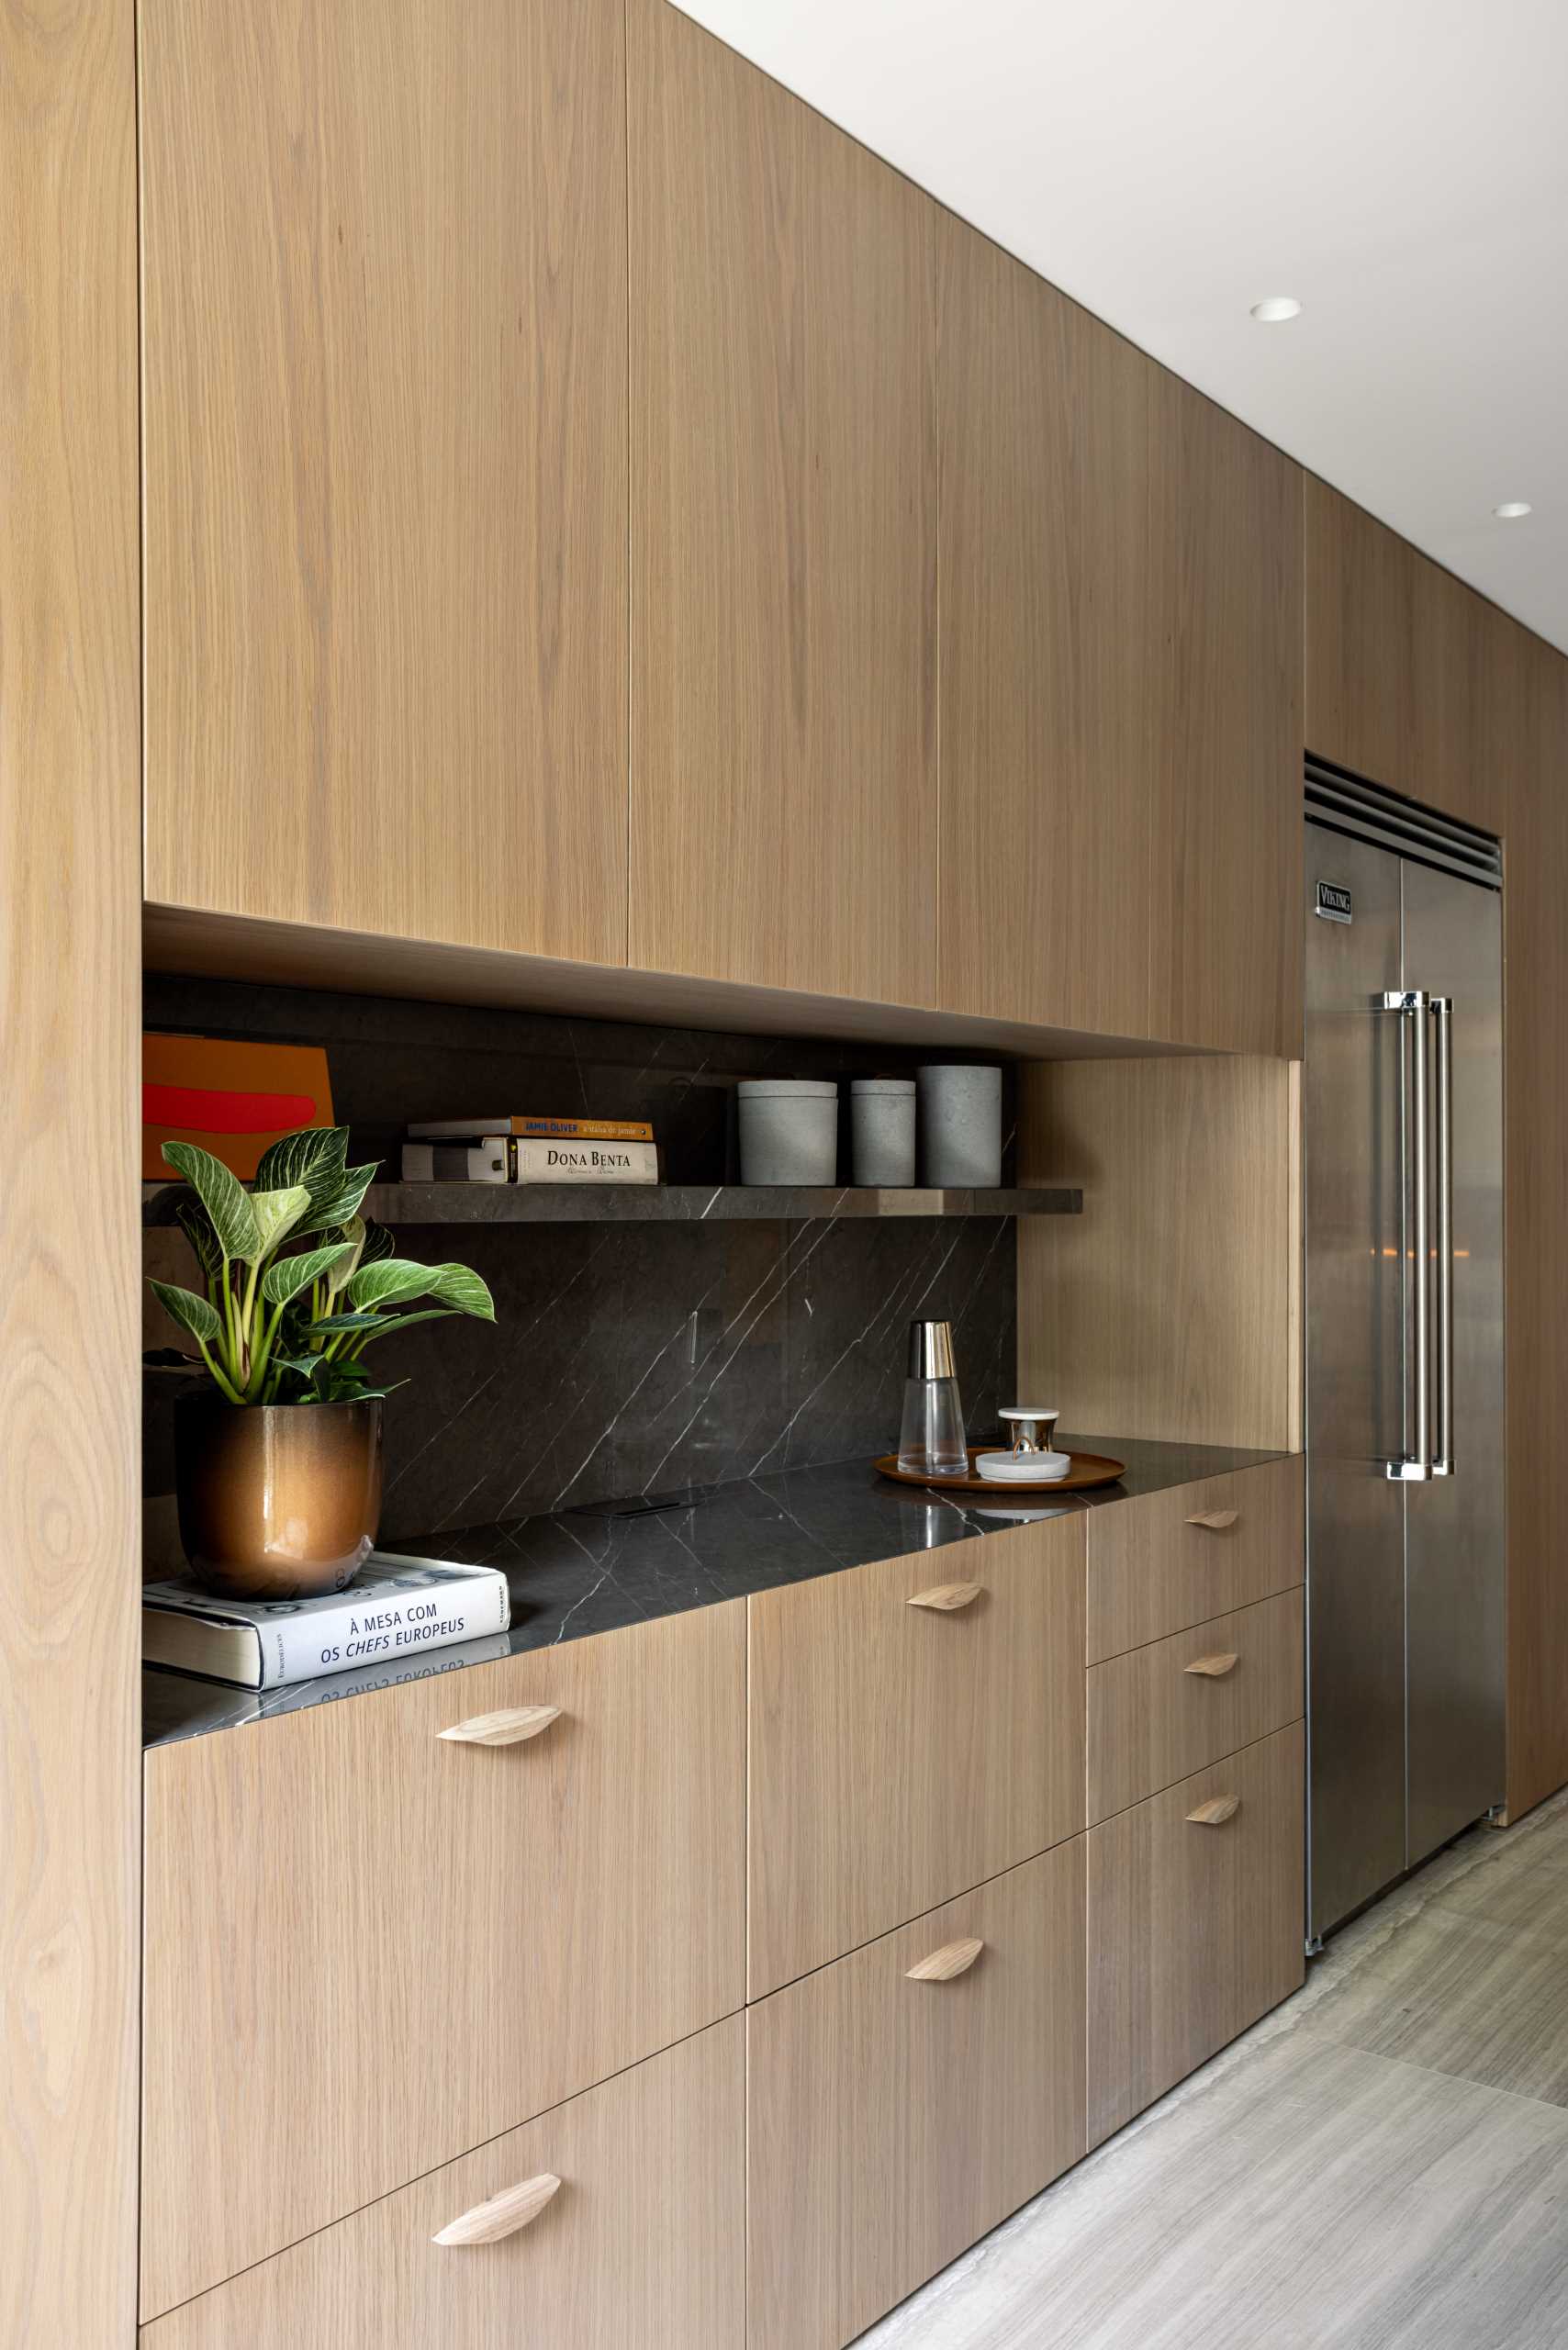 آشپزخانه مدرن با کابینت های چوبی.